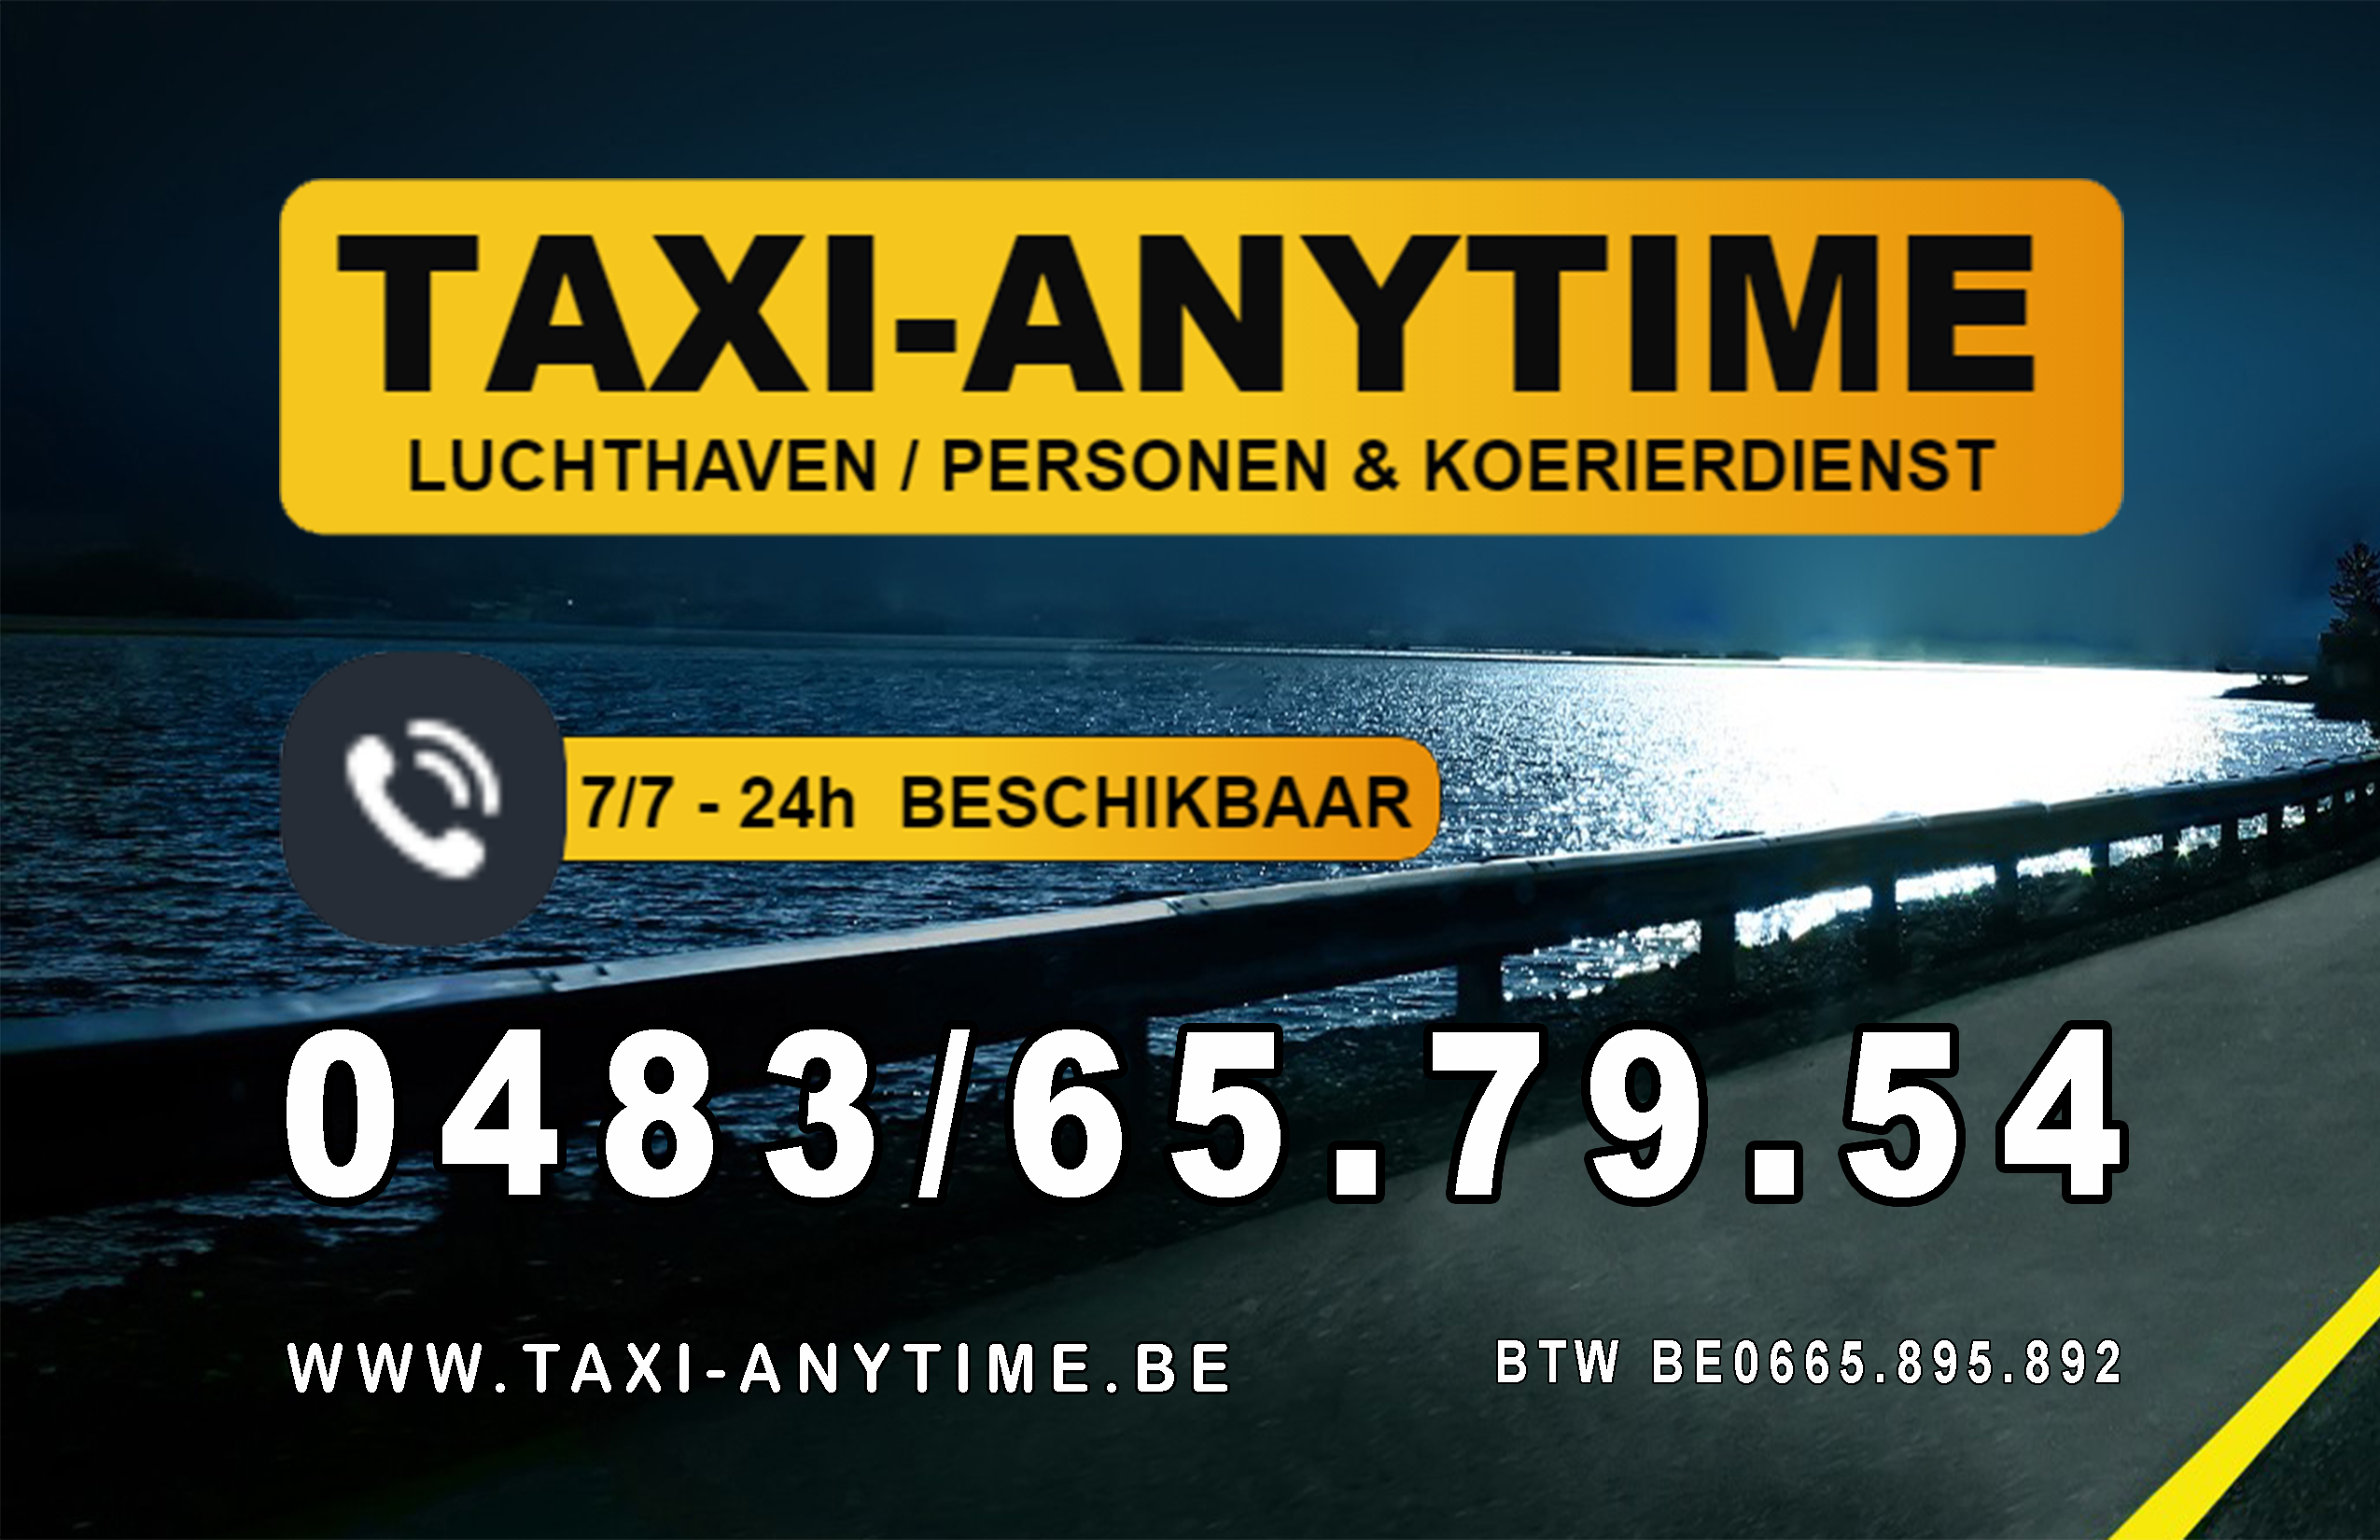 taxibedrijven met luchthavenvervoer Drongen Taxi-anytime